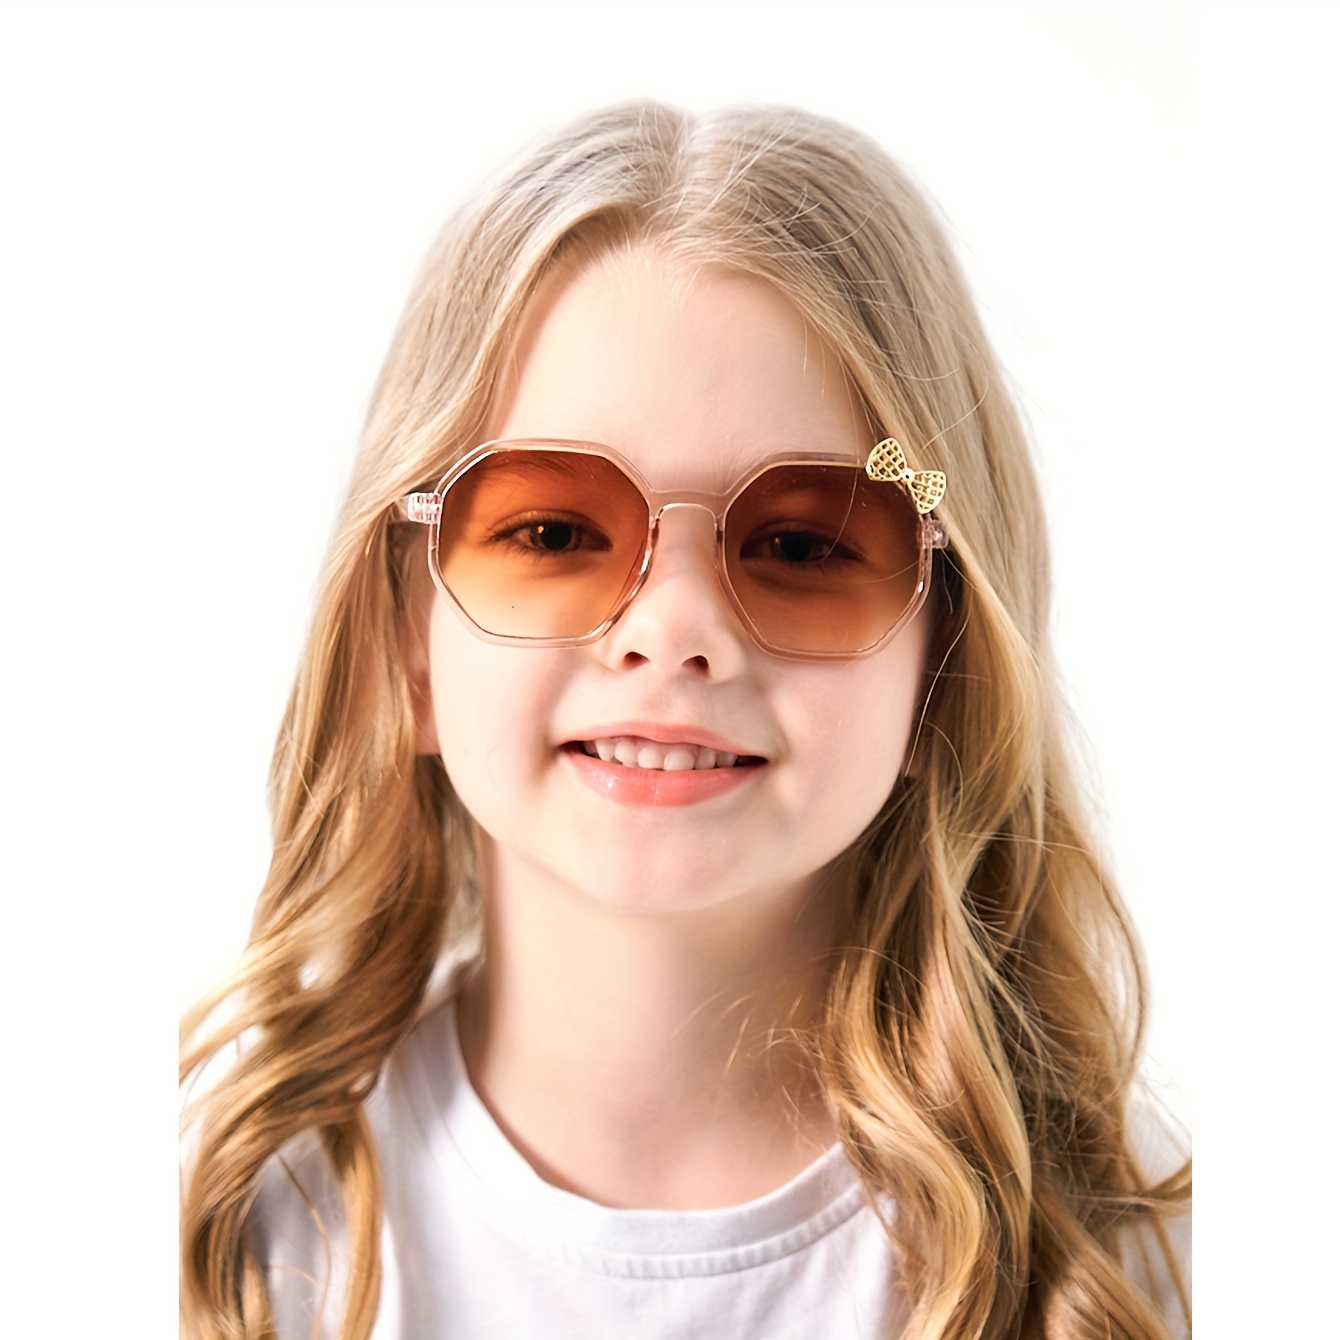 Kinder-sonnenbrille Aus Silikon, Baby-sonnenbrille Für Outdoor-aktivitäten,  Sonnenschutz, Uv-schutz, Geschenk Für Kinder, Kinderzubehör - Kindermode -  Temu Germany